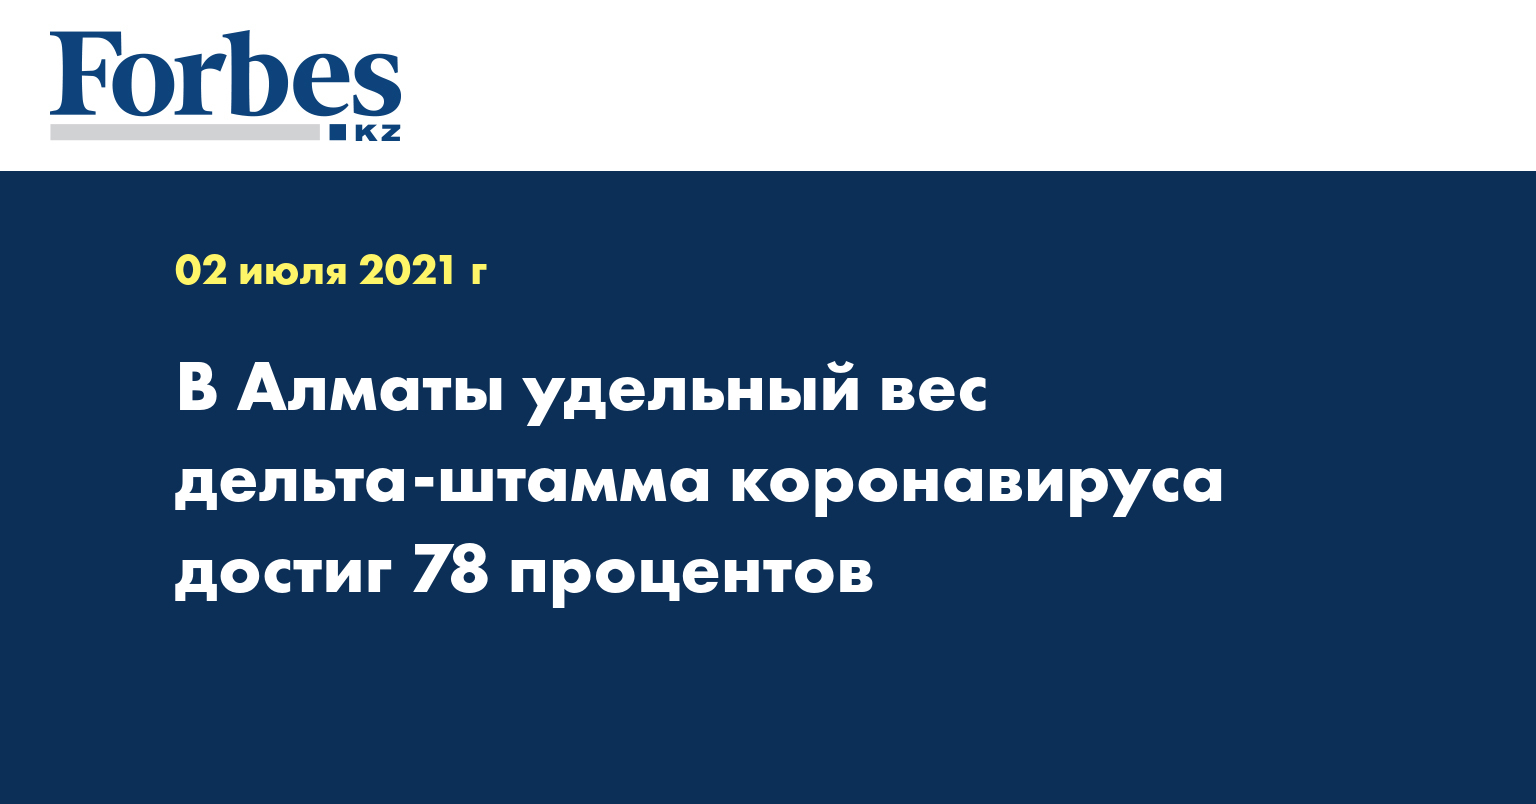 В Алматы удельный вес дельта-штамма коронавируса достиг 78 процентов